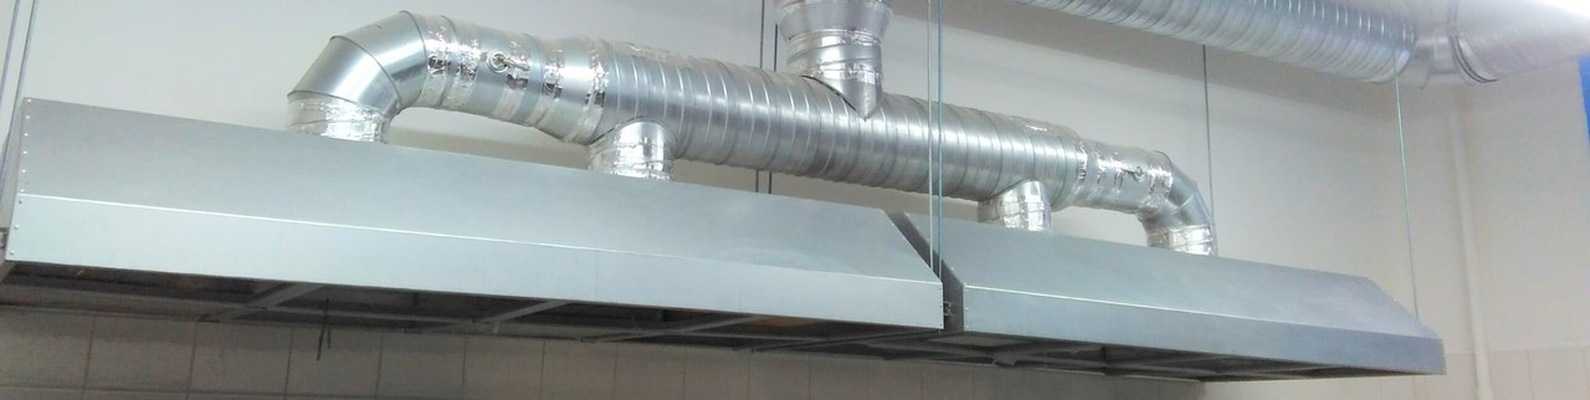 Монтаж пластиковых воздуховодов вентиляции: как собрать систему из полимерных труб